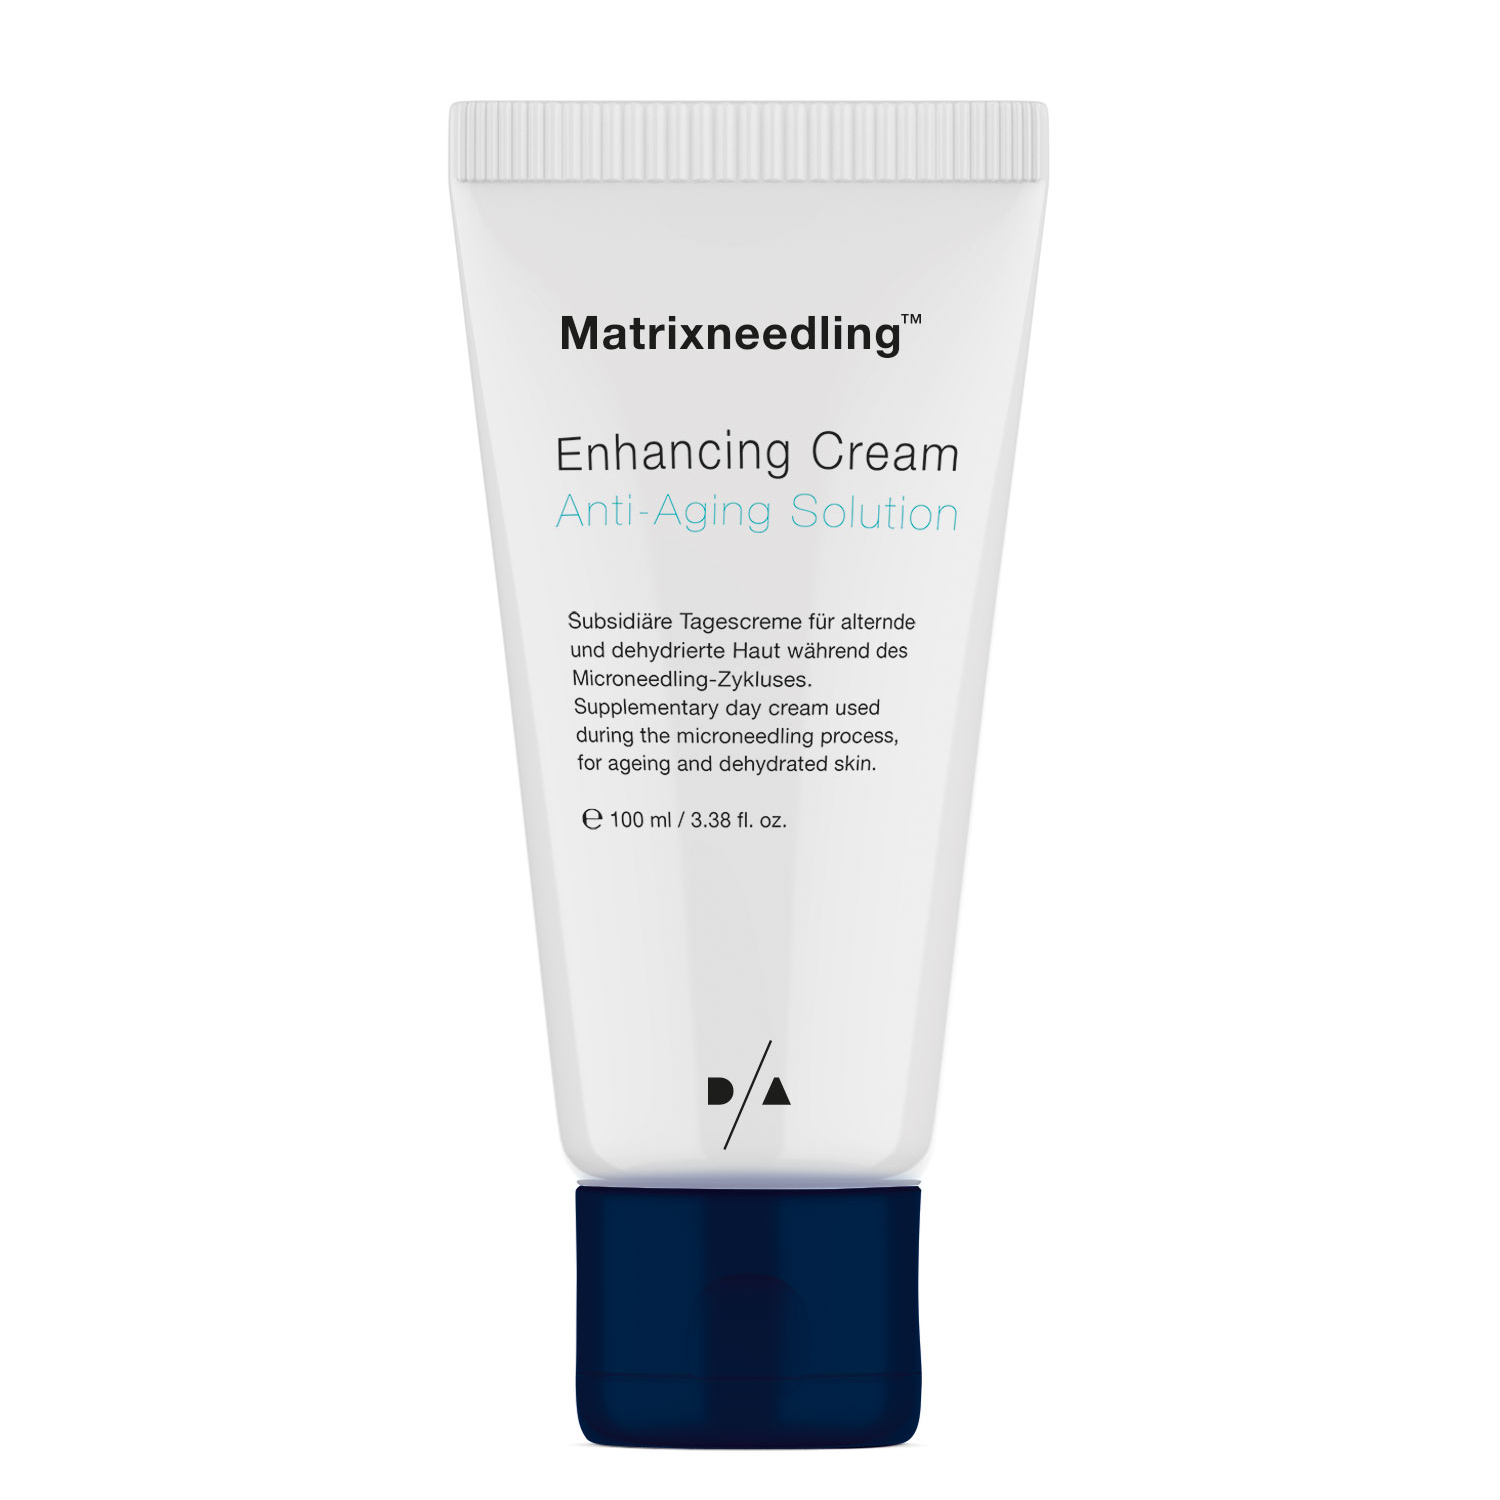 D/A Matrixneedling™ Anti-Aging Enhancing Creme